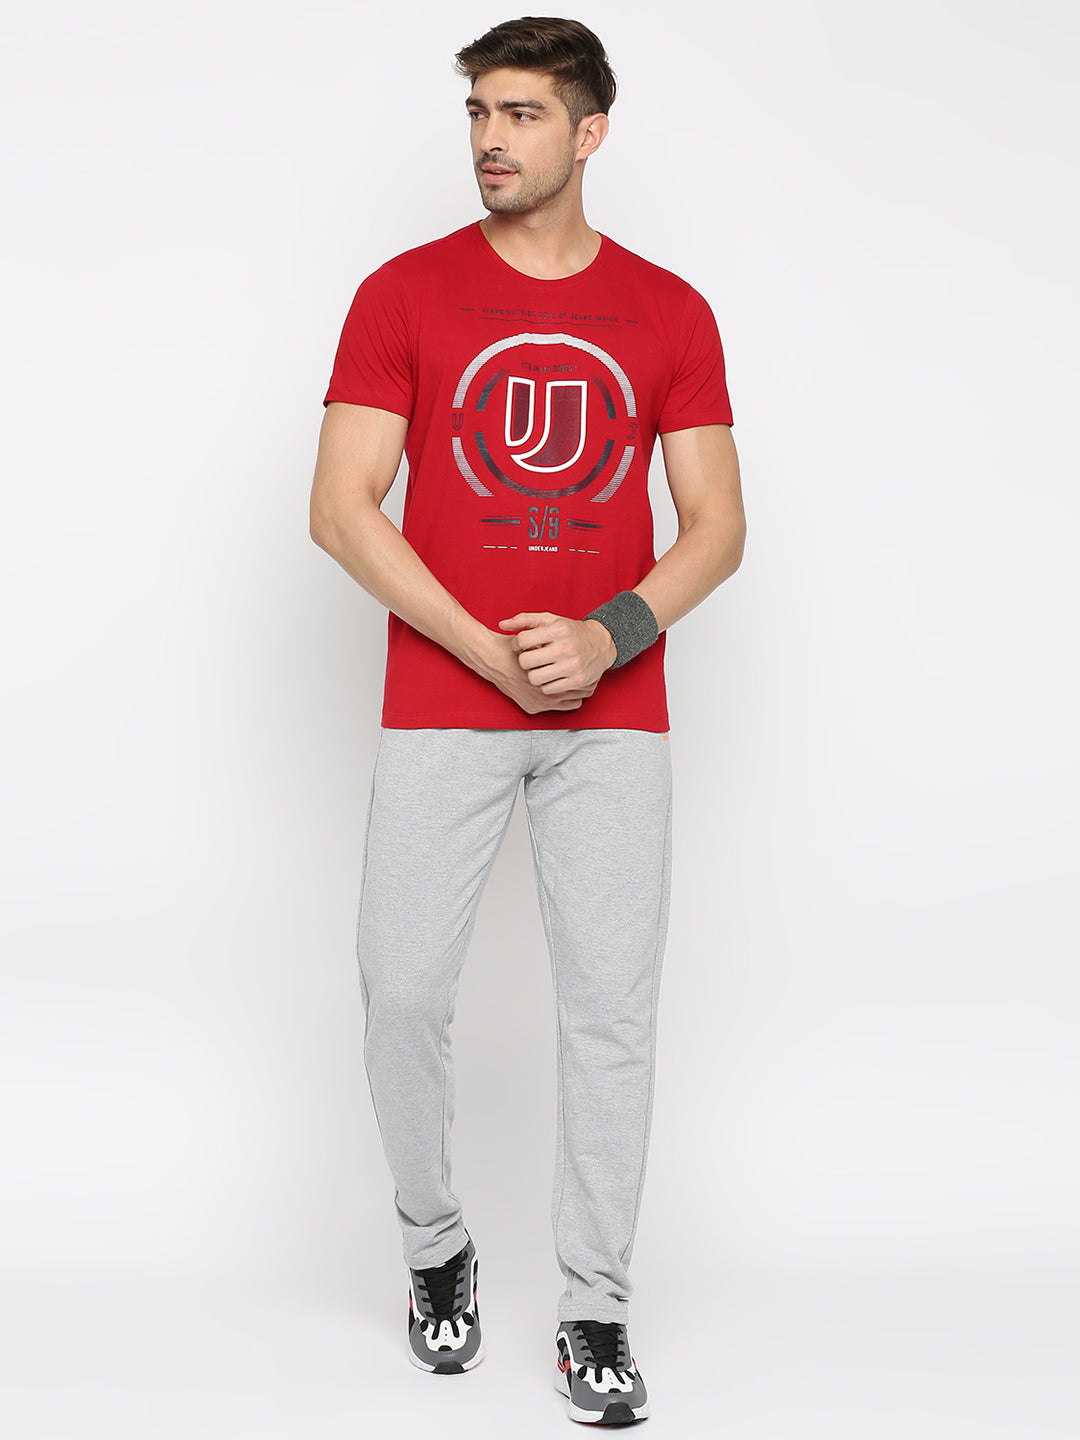 Men Premium Deep Red Cotton Round Neck Printed Tshirt- UnderJeans by Spykar